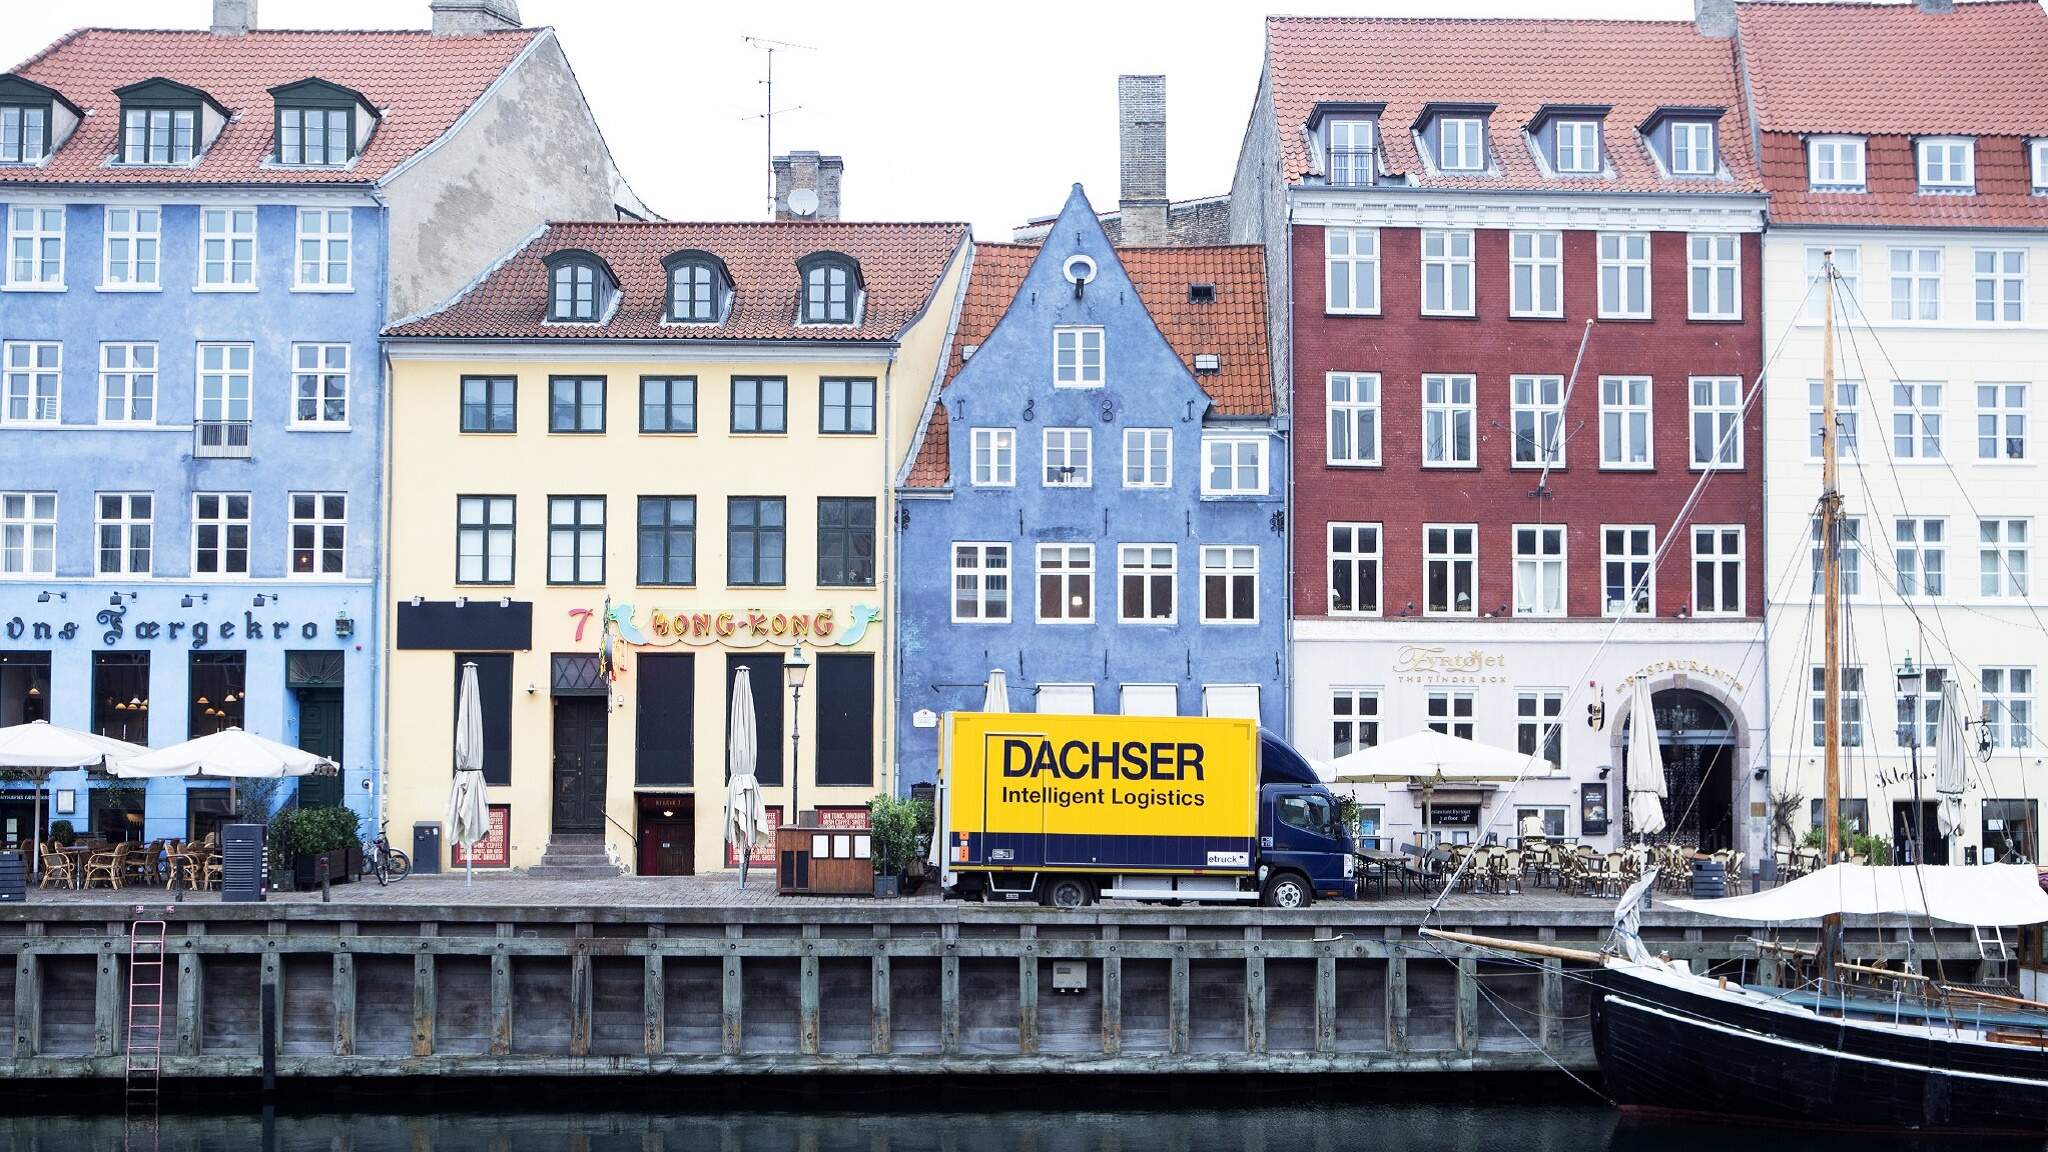 En ellastbil i DACHSER-farver på Nyhavn i København.